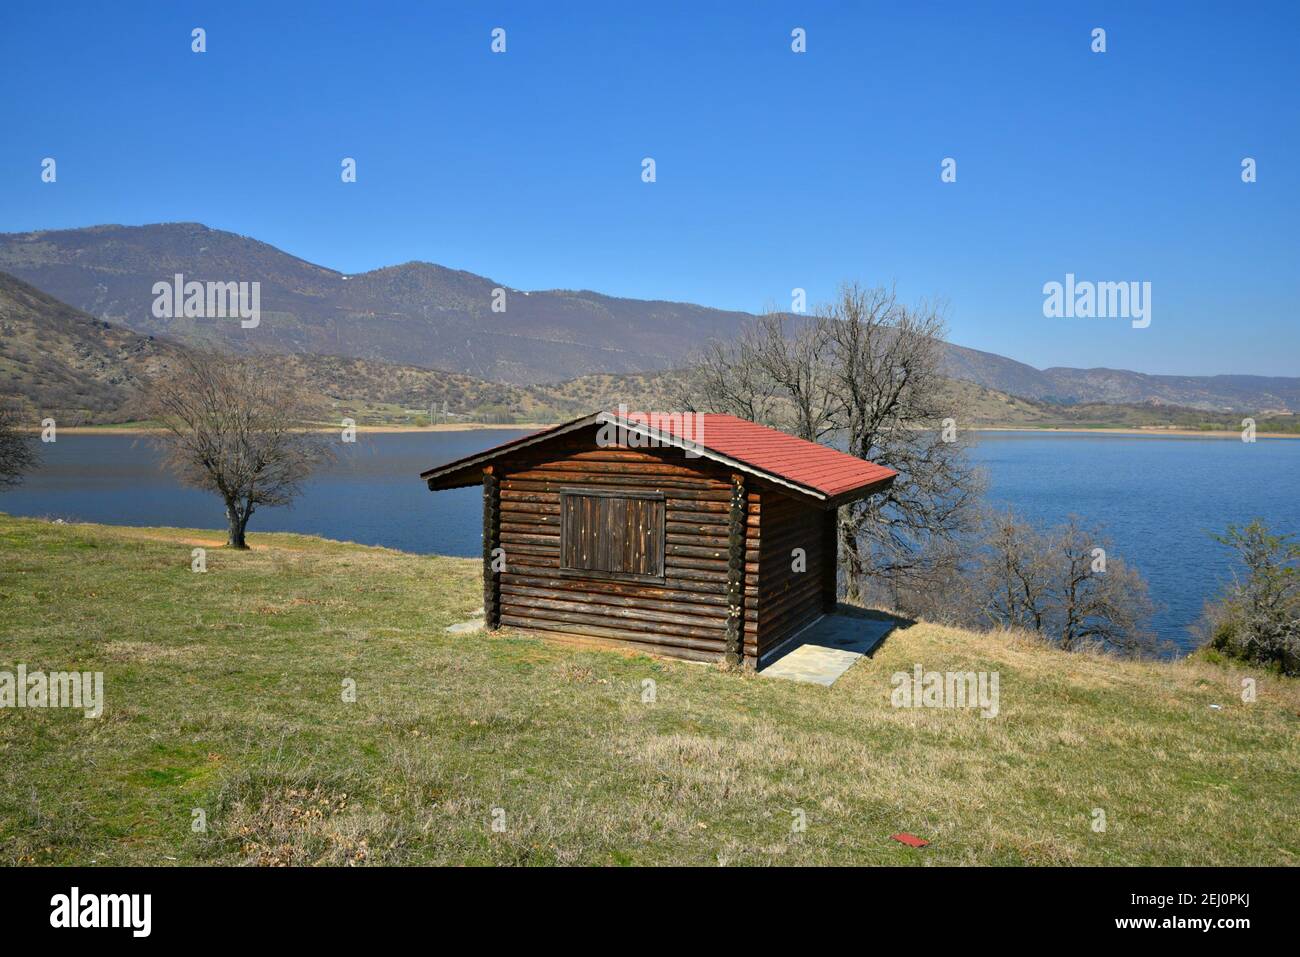 Landschaft mit Panoramablick auf eine Holzhütte am Ufer des Sees Vegoritida, dem natürlichen See von Florina in Westmakedonien Griechenland. Stockfoto